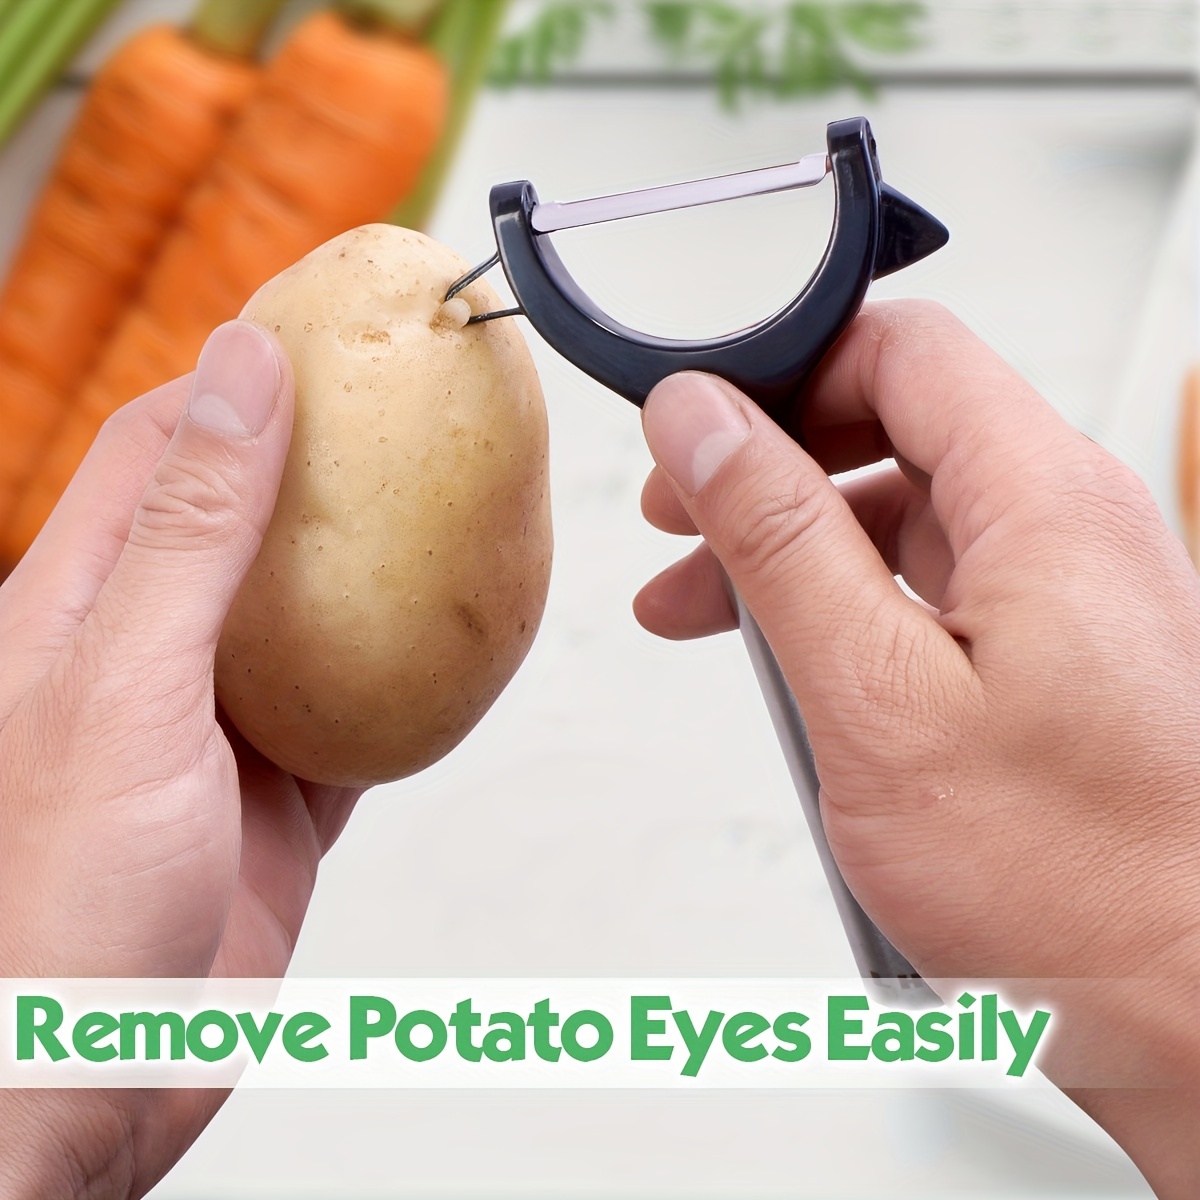 Ultra Sharp Stainless Steel Vegetable Peeler For Potatoes, All Fruits &  Veggies